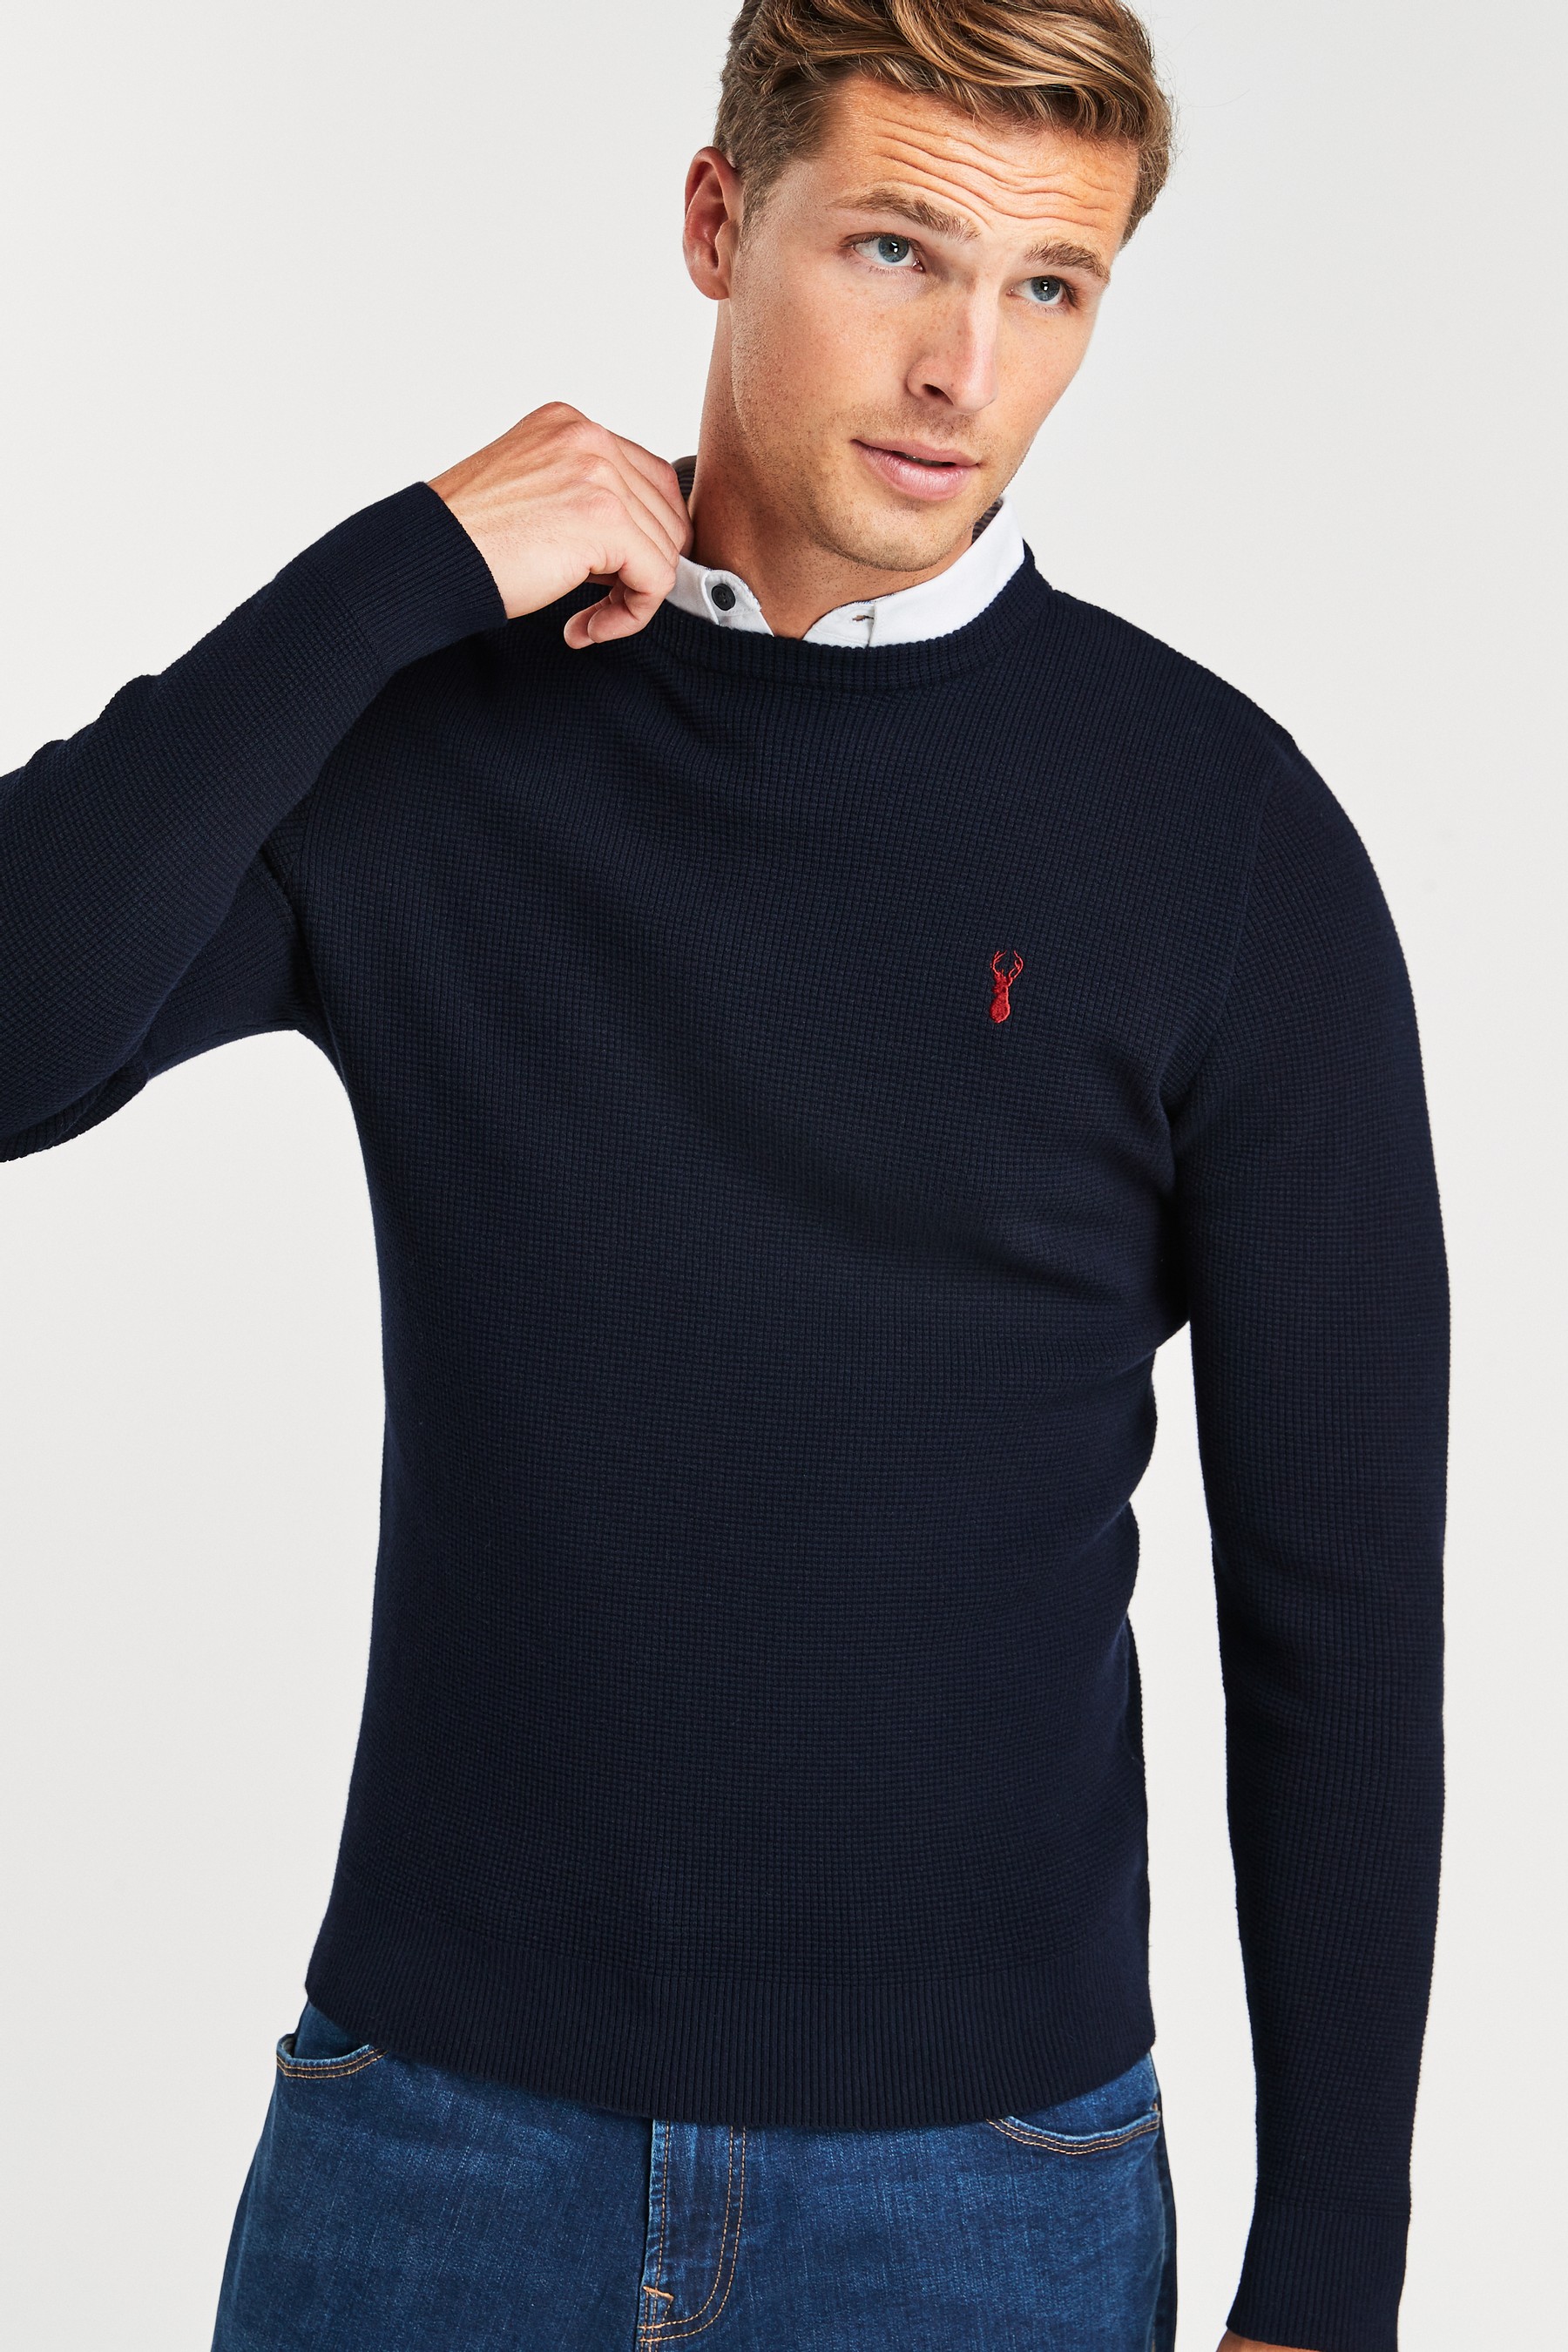 Buy Regular Mock Shirt Jumper from Next Portugal